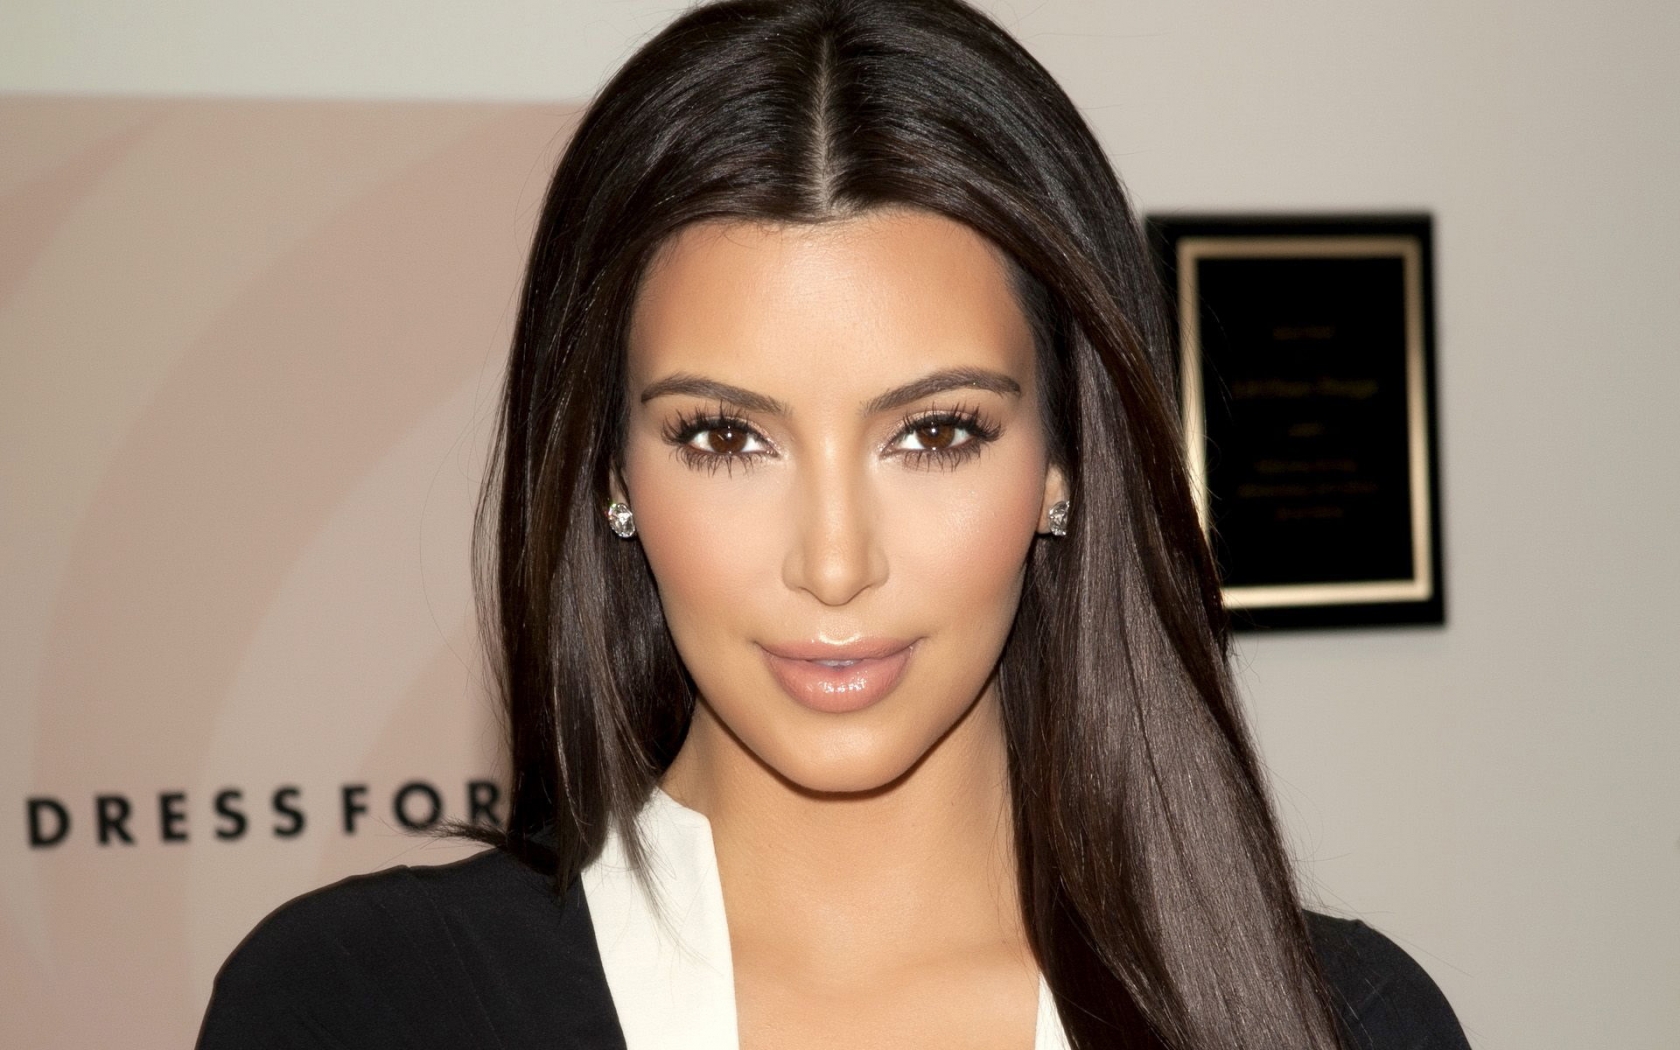 Gorgeous Kim Kardashian for 1680 x 1050 widescreen resolution